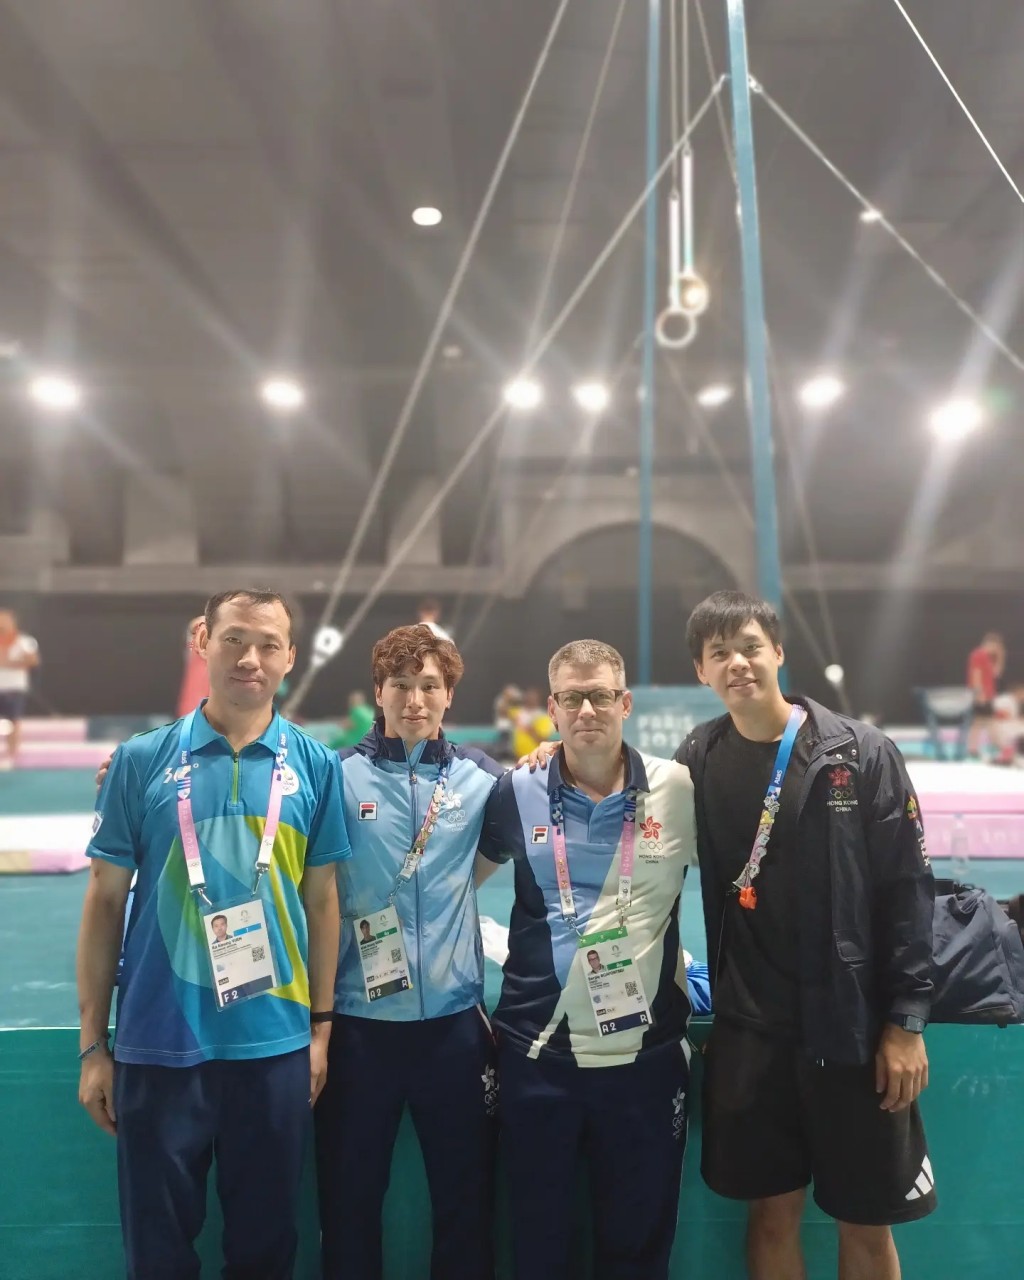 奥运体操裁判袁家强(左起)、石伟雄及塞治教练一起出战奥运。 网上图片